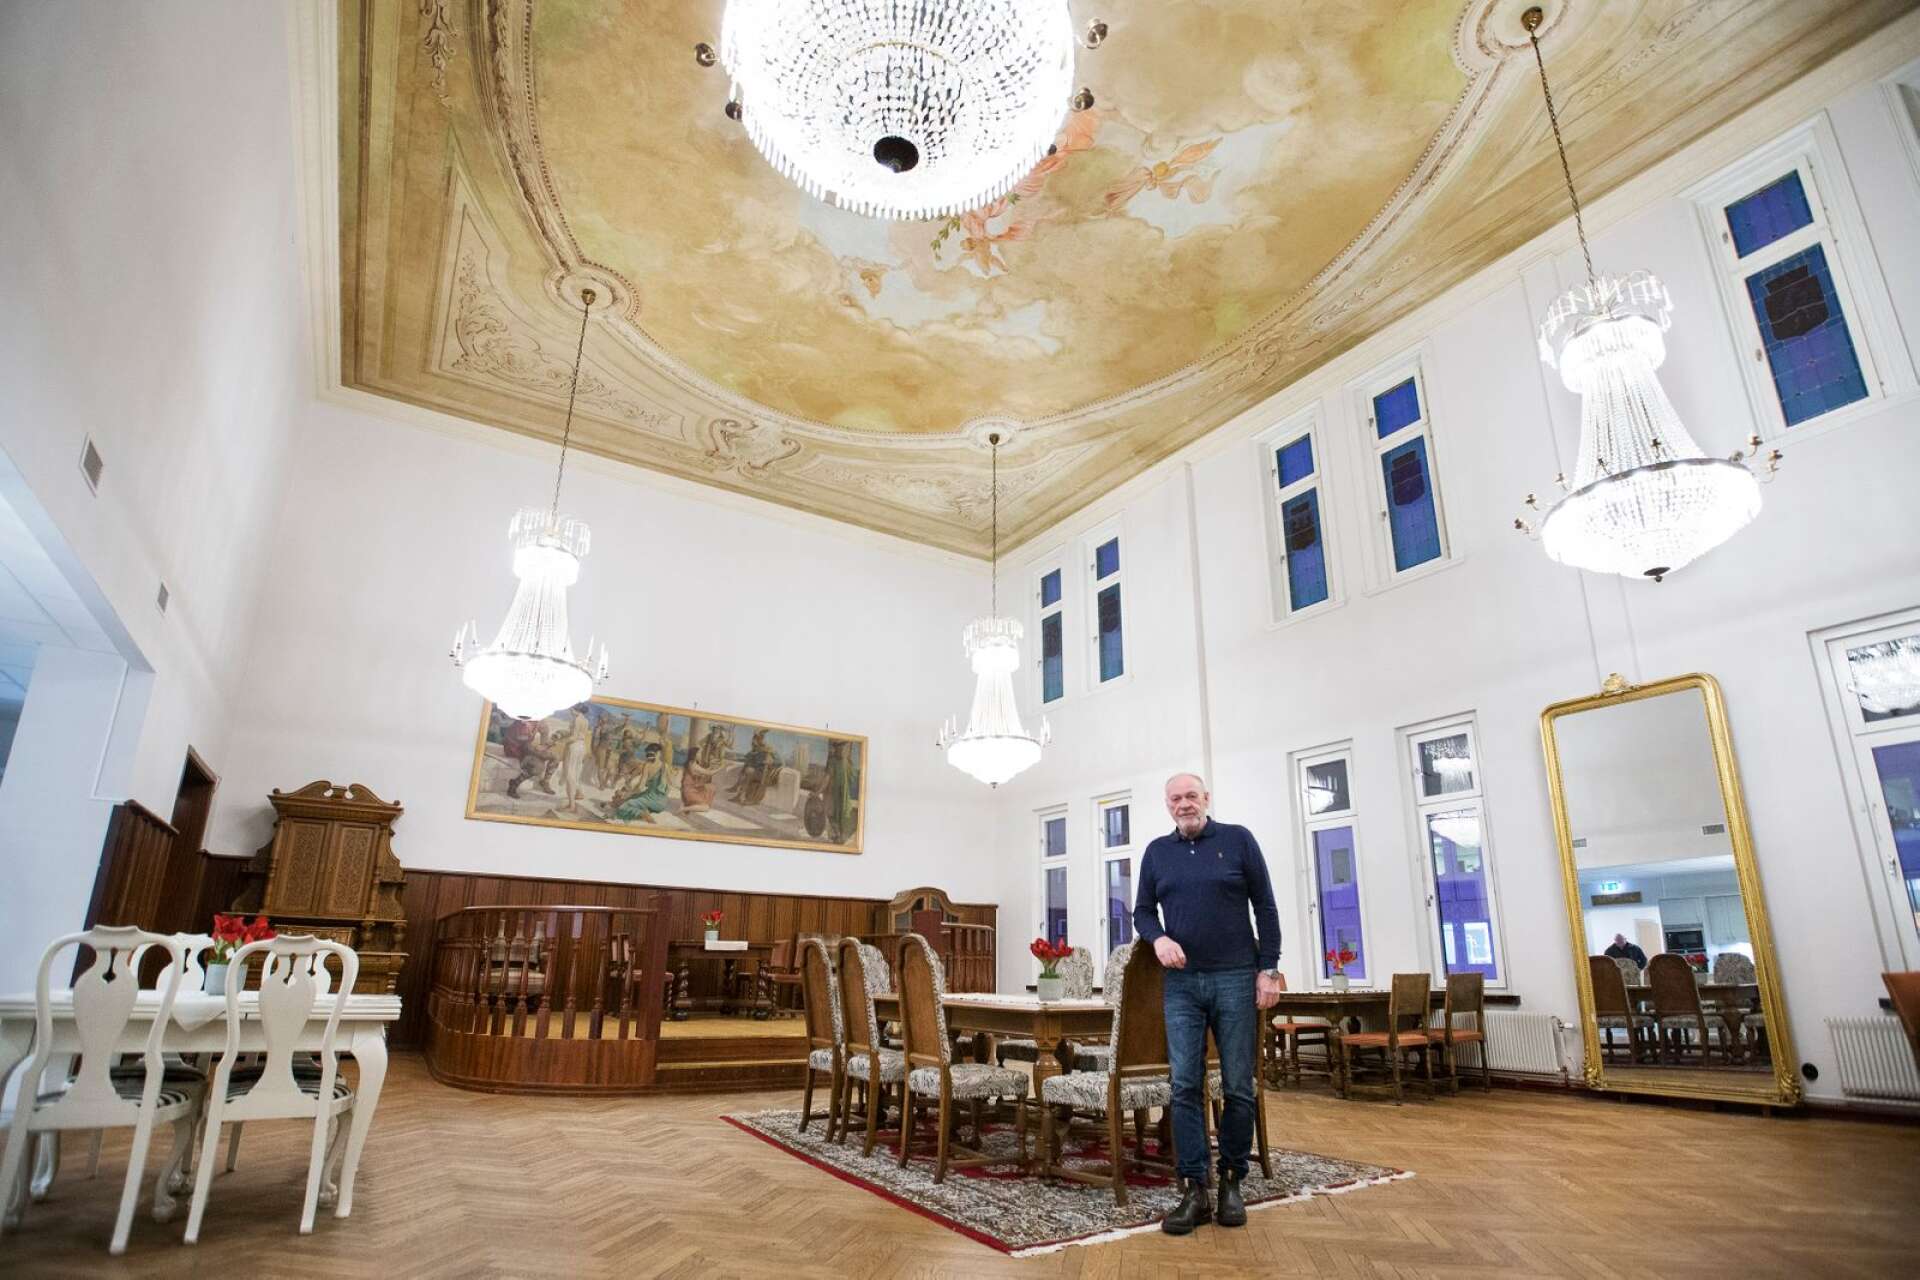 Grand hotells anrika festsal är nu färdigrenoverad till sin forna glans. Den blir en festlokal för de som bor i huset, berättar Karlstadhus vd Janne Gustafsson.